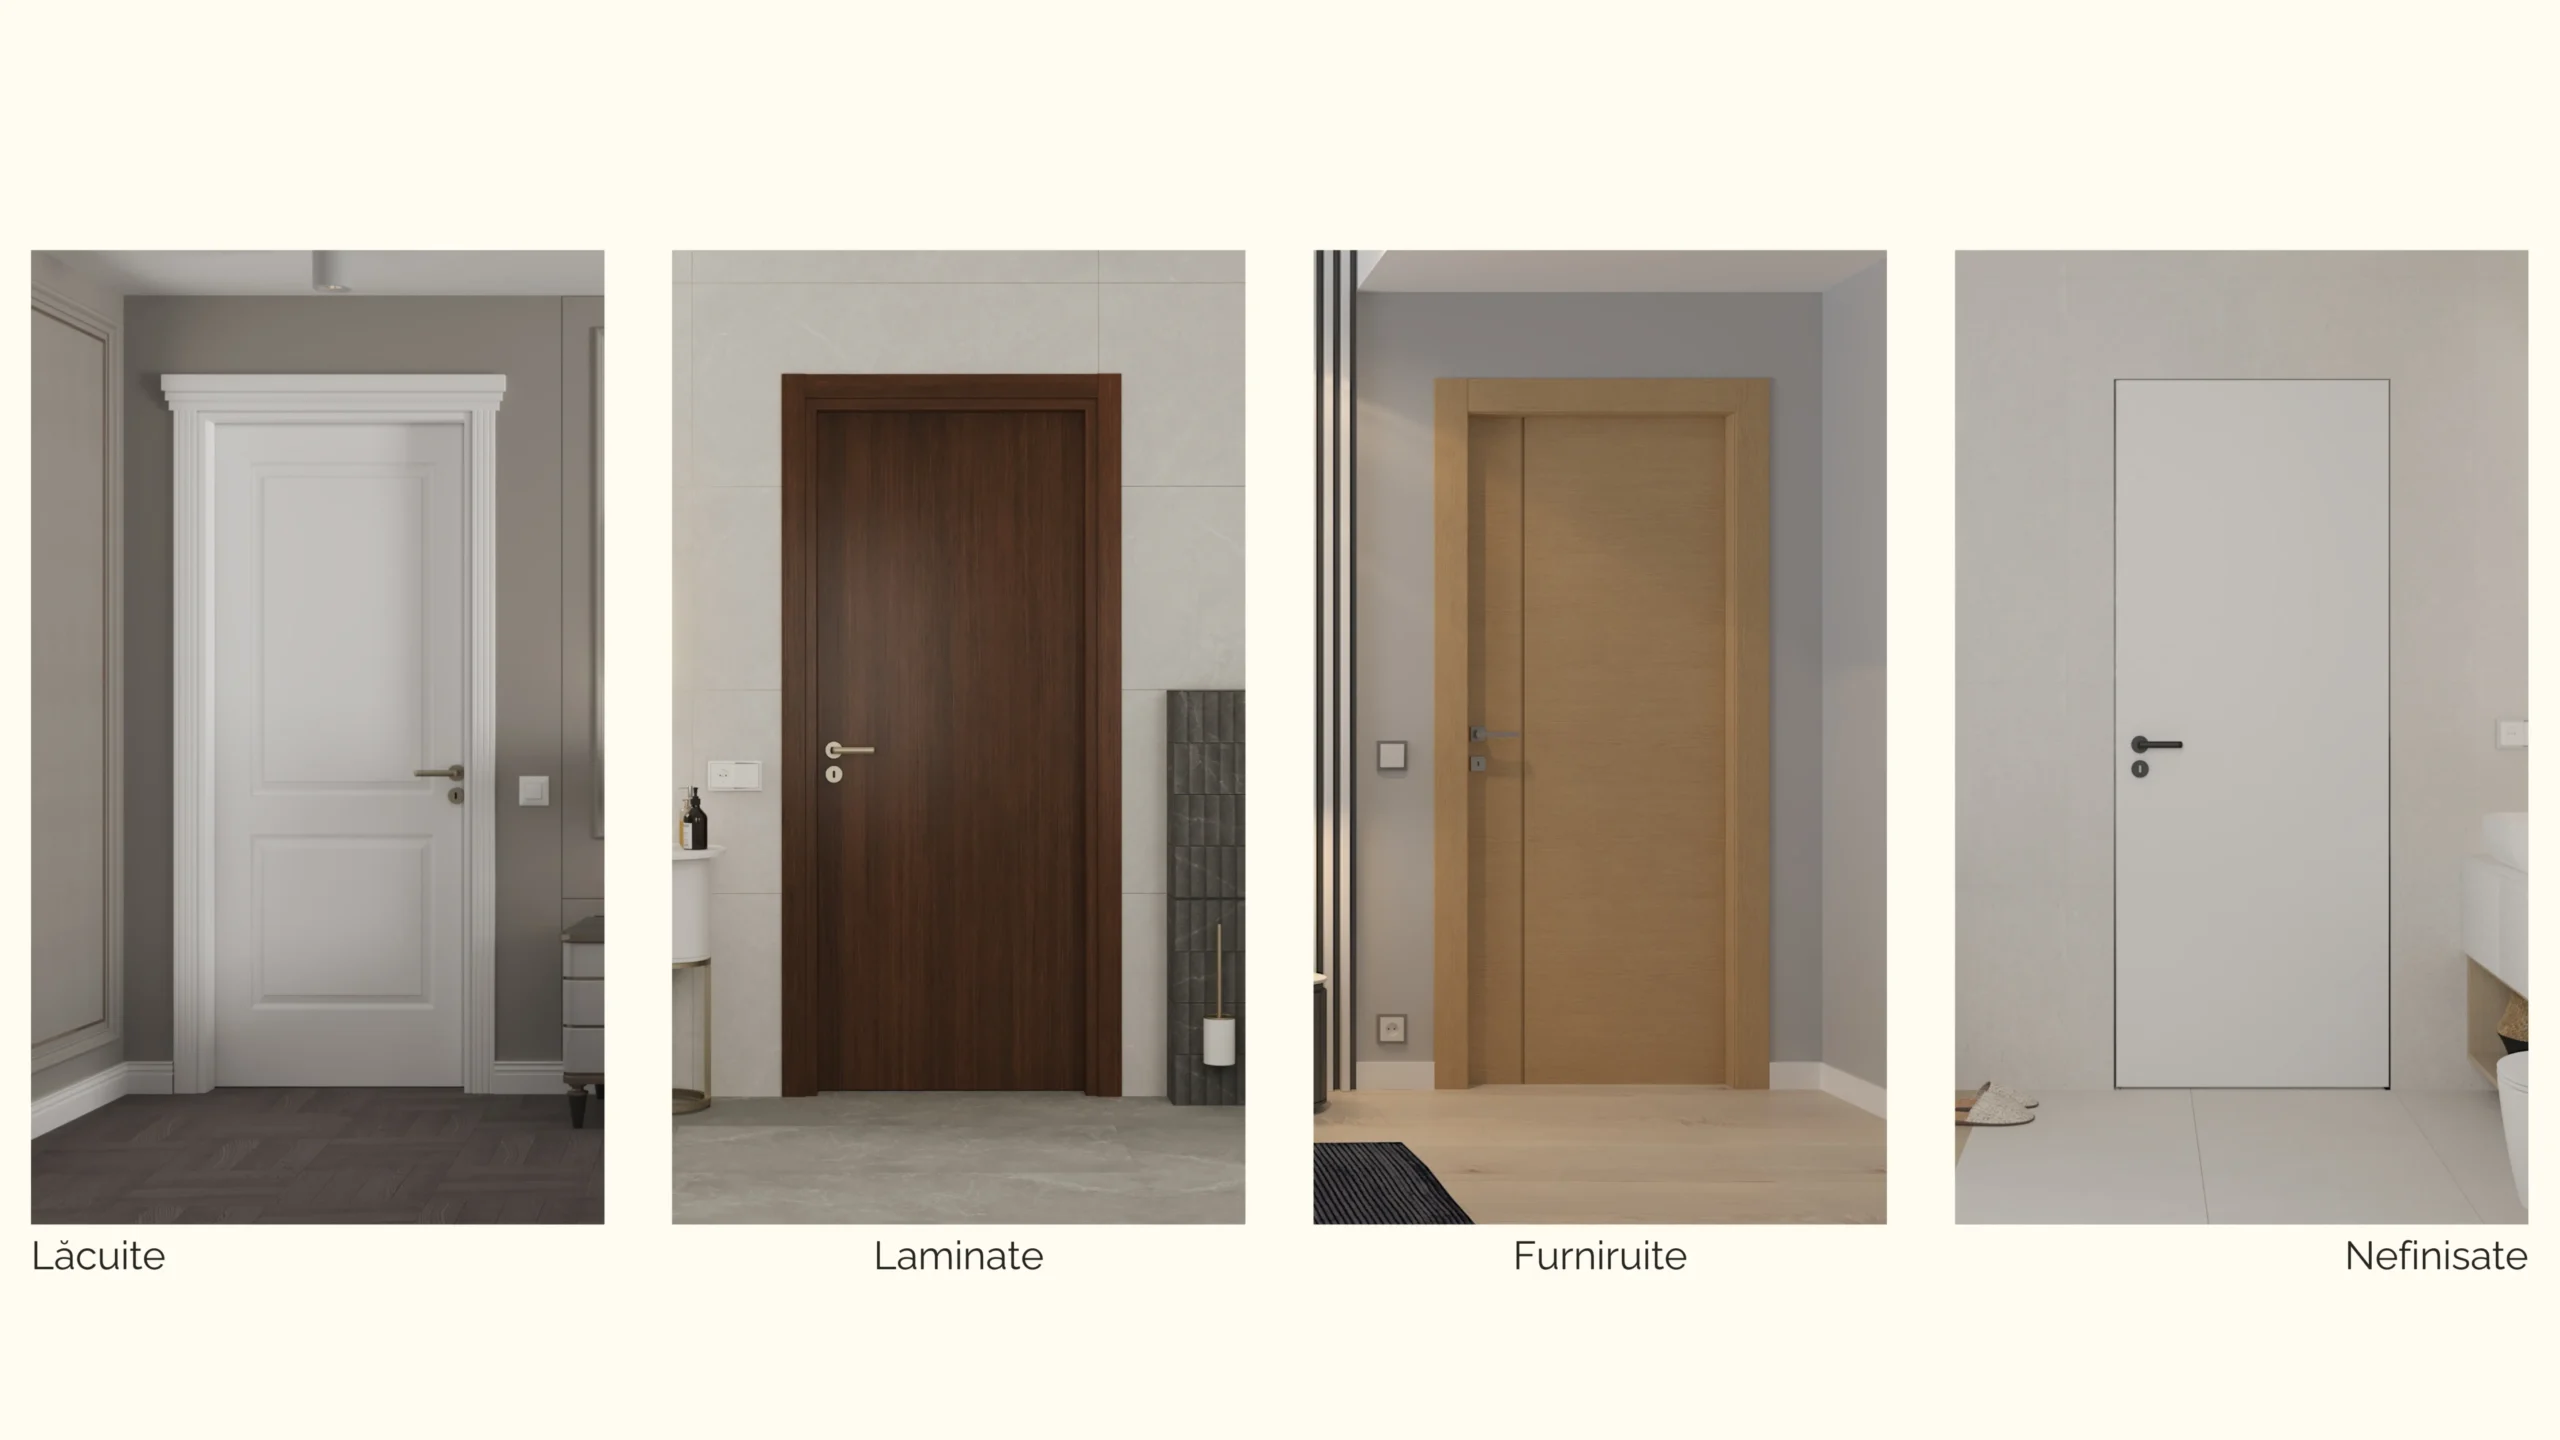 Cum alegi între diverse tipuri de finisaje pentru uși: Lăcuite, laminate, furniruite sau nefinisate?